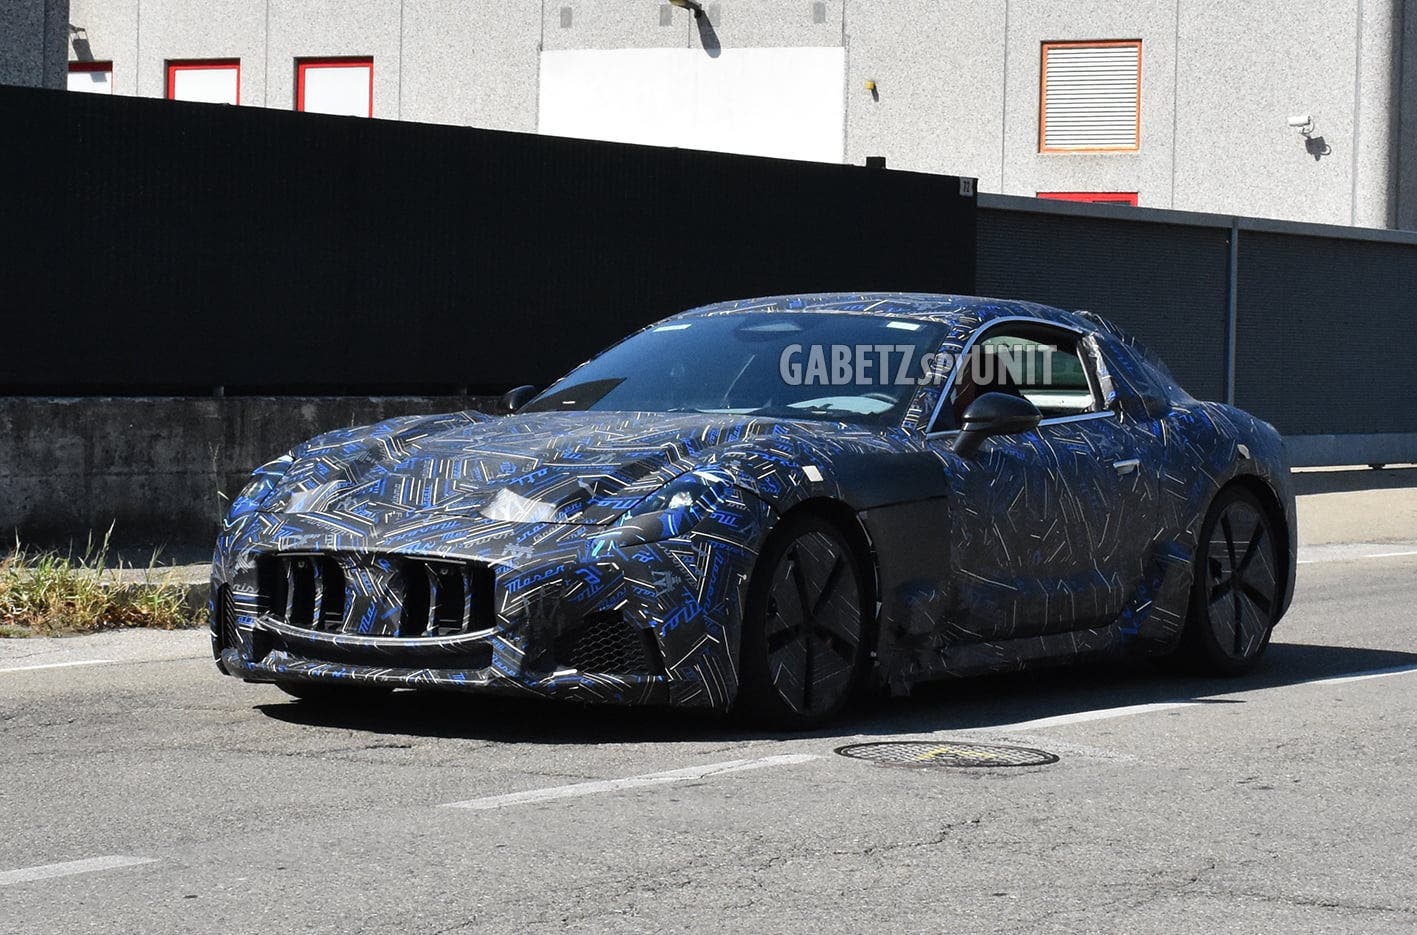 Maserati GranTurismo 2022 foto spia Modena